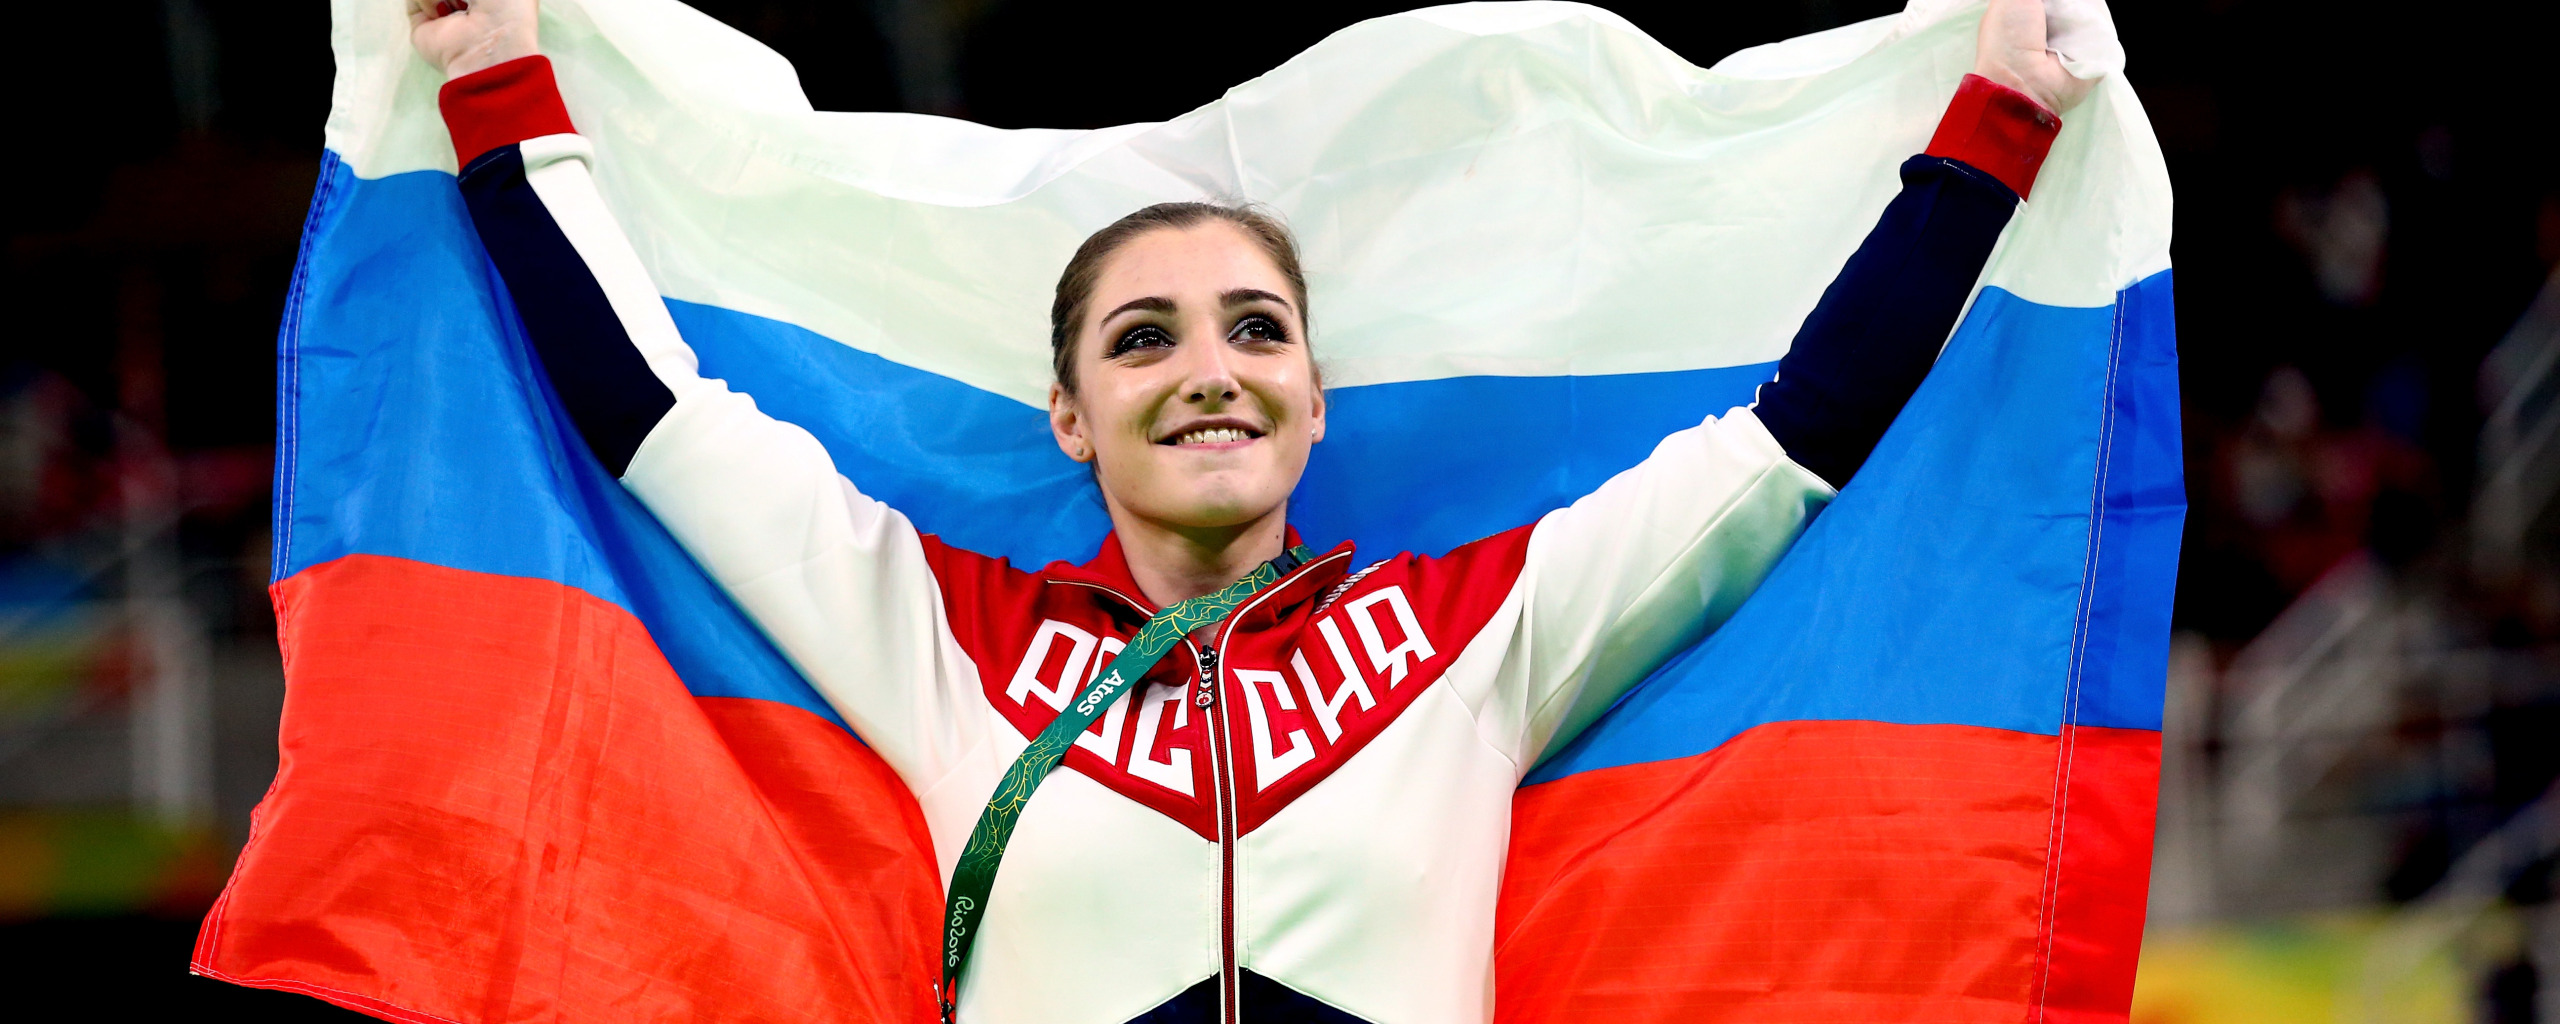 Победить какое лицо. Самые красивые девушки Сочи. Власов с флагом на Олимпиаде. Олимпийский флаг России.